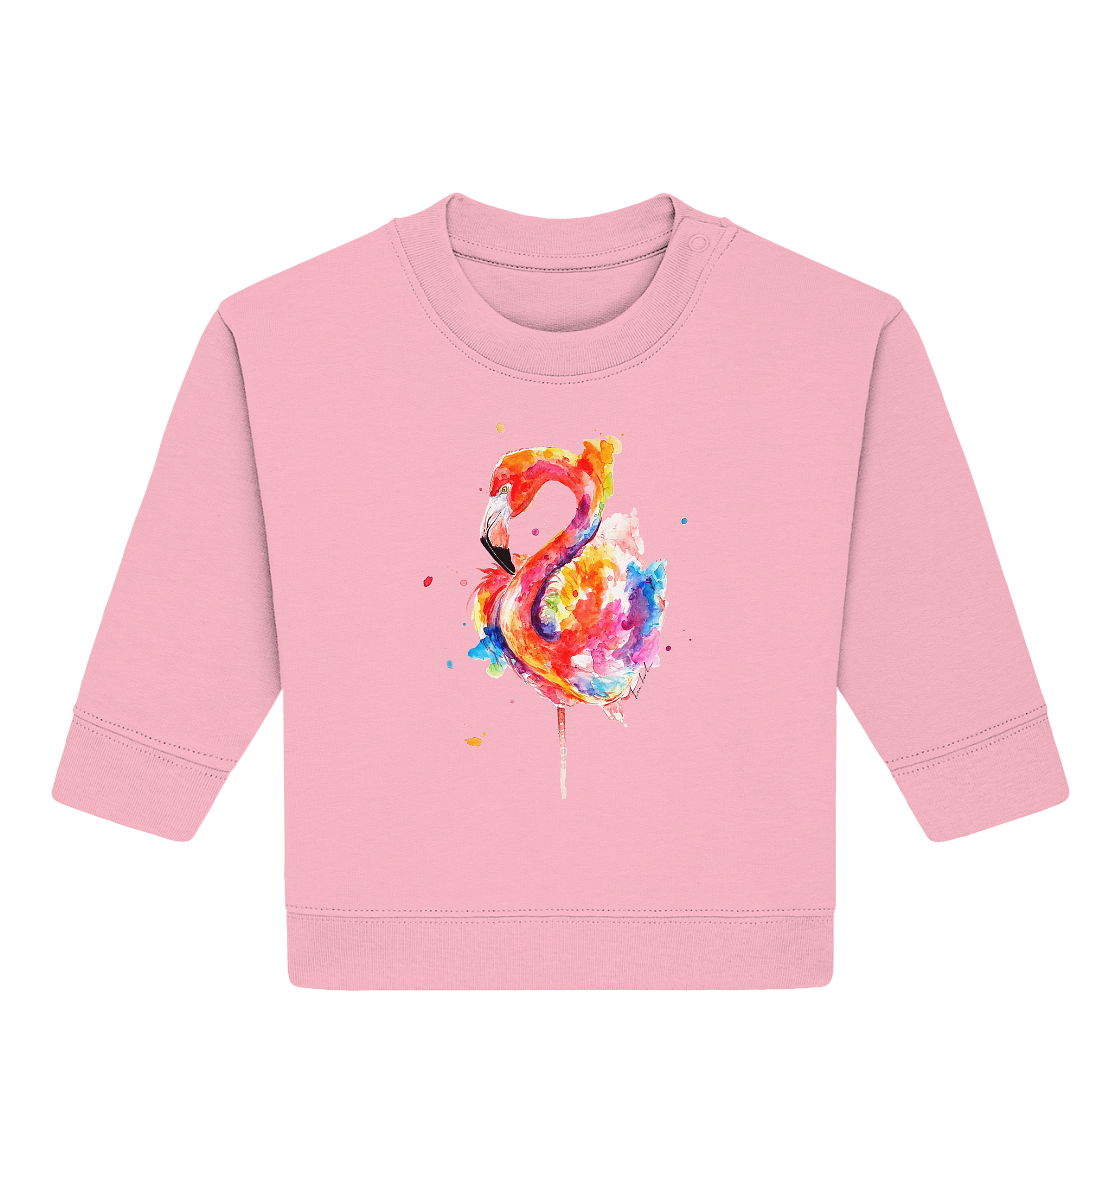 Buntes Flamingo - Baby Organic Sweatshirt